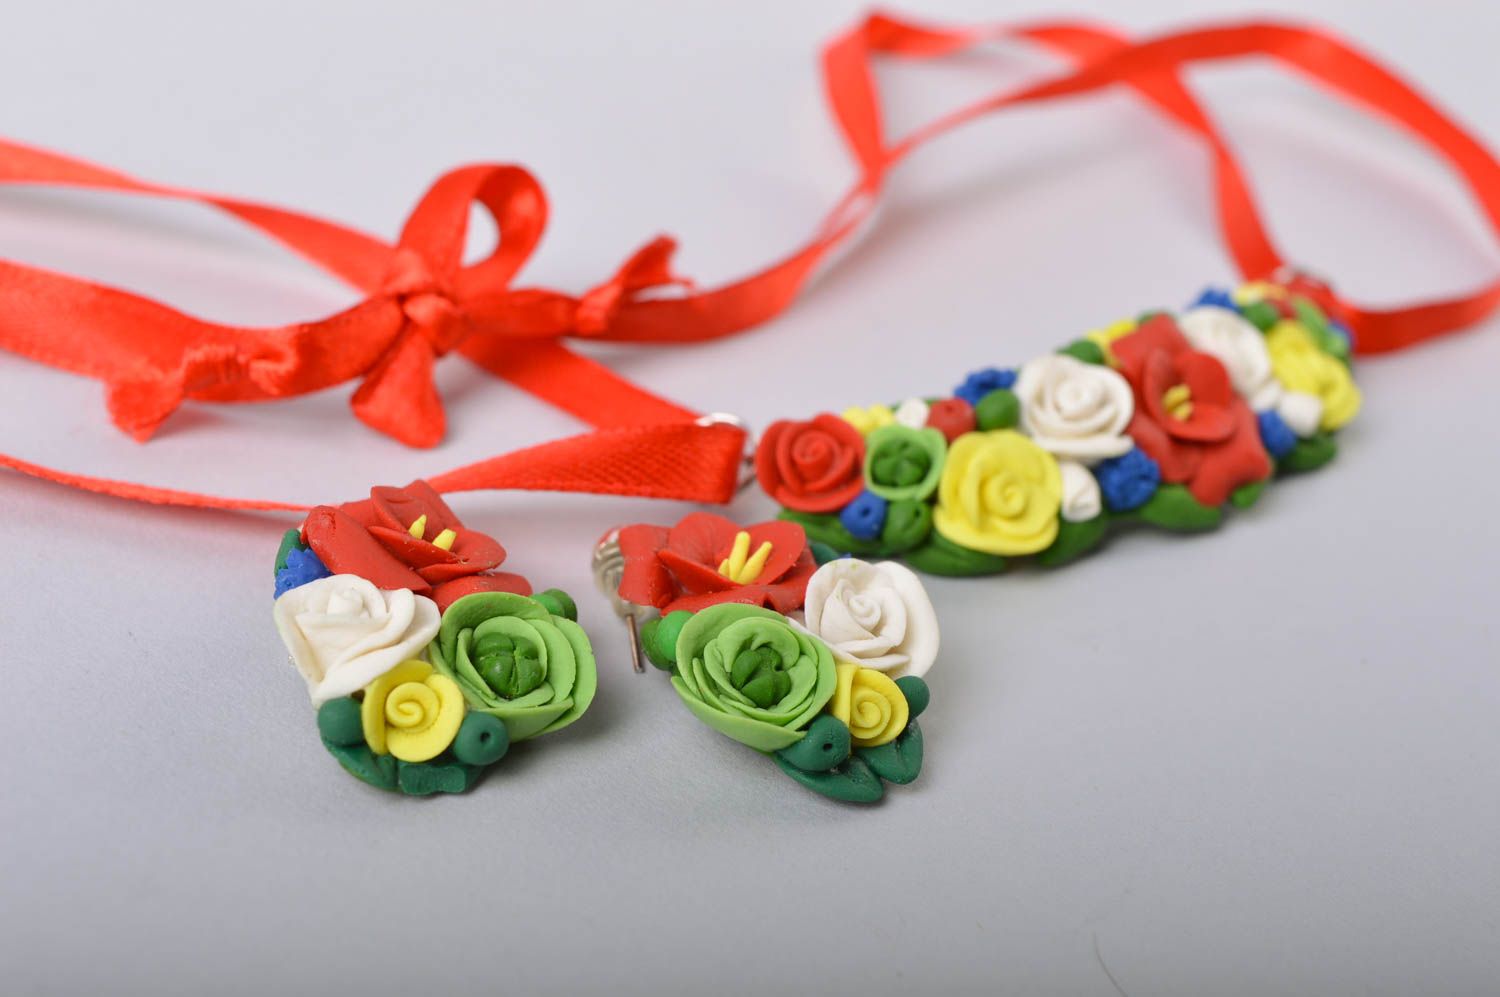 Boucles d'oreilles et pendentif fleurs en porcelaine froide faits main sur ruban photo 4